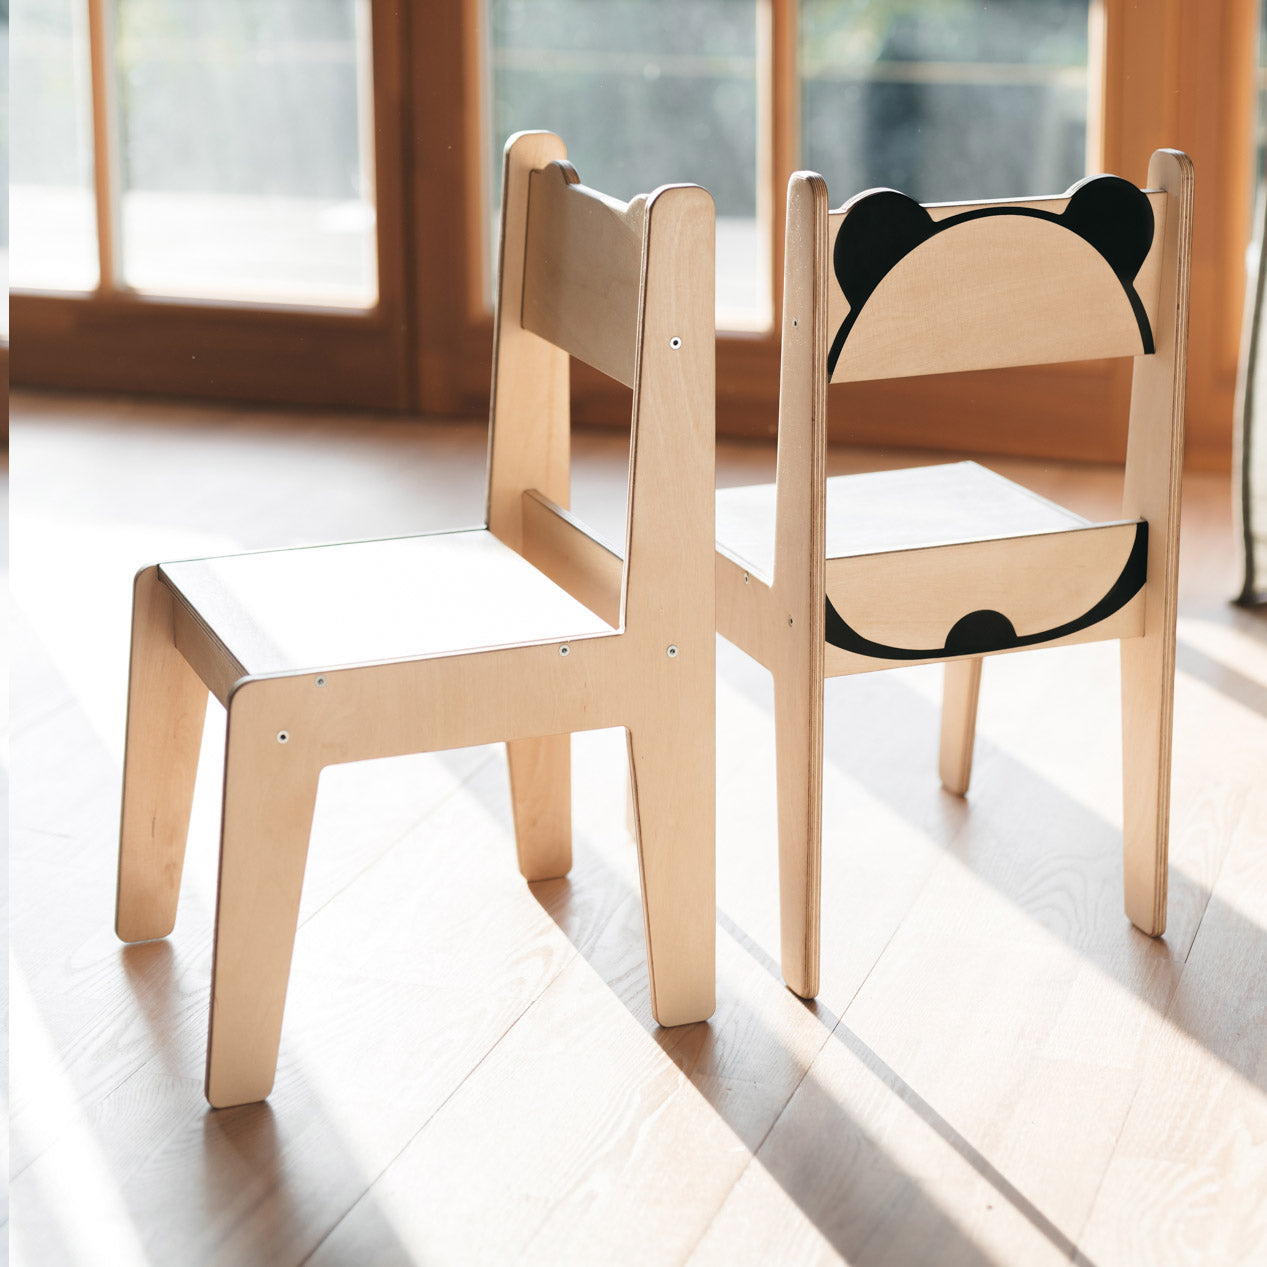 Panda Table and Chair Set - Natural